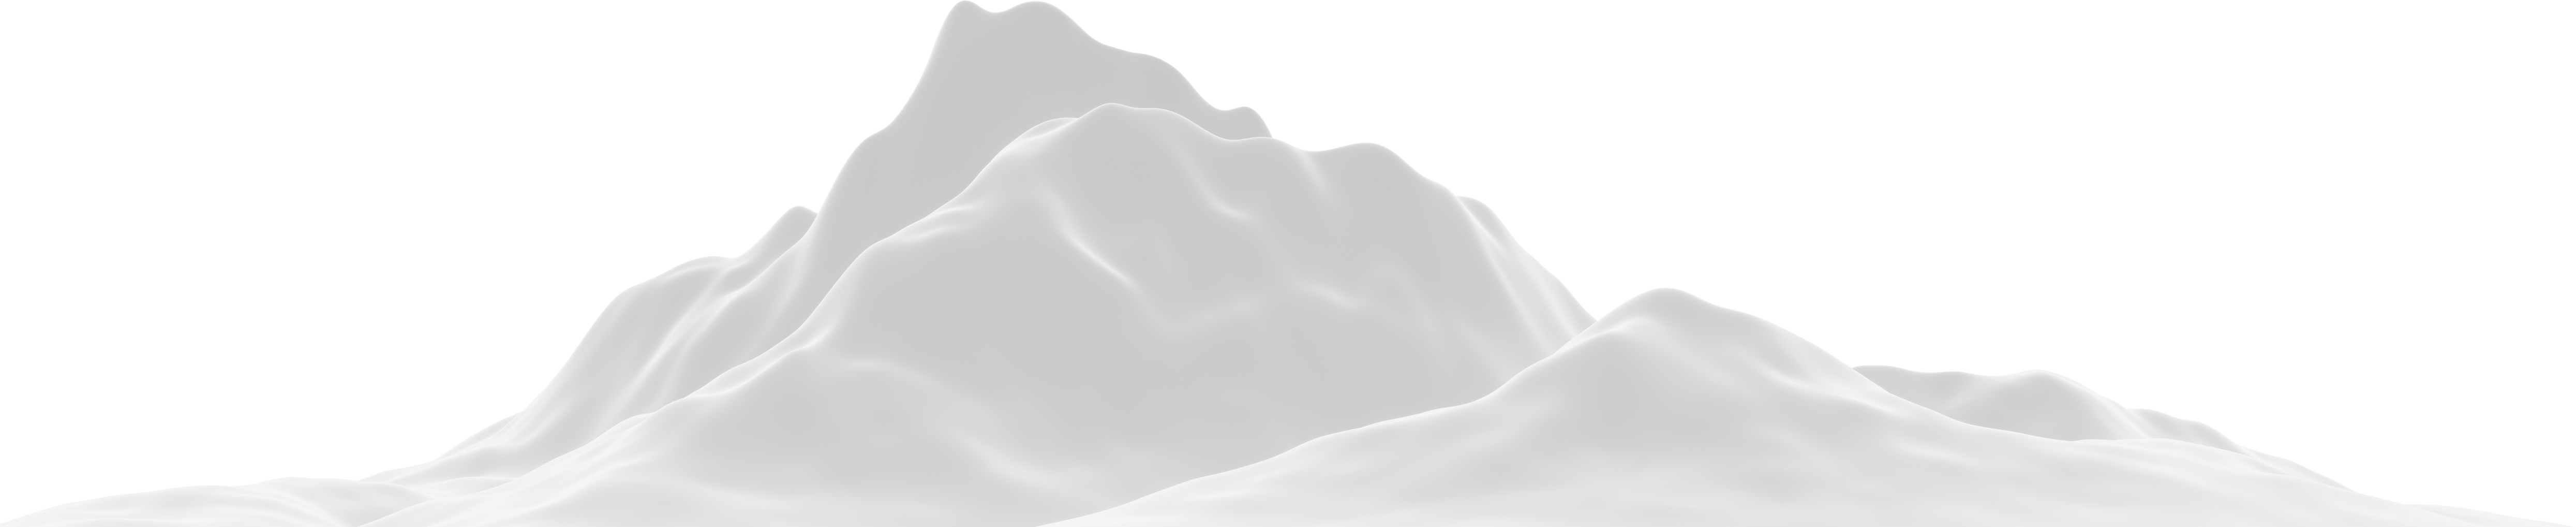 3D white snowy mountain